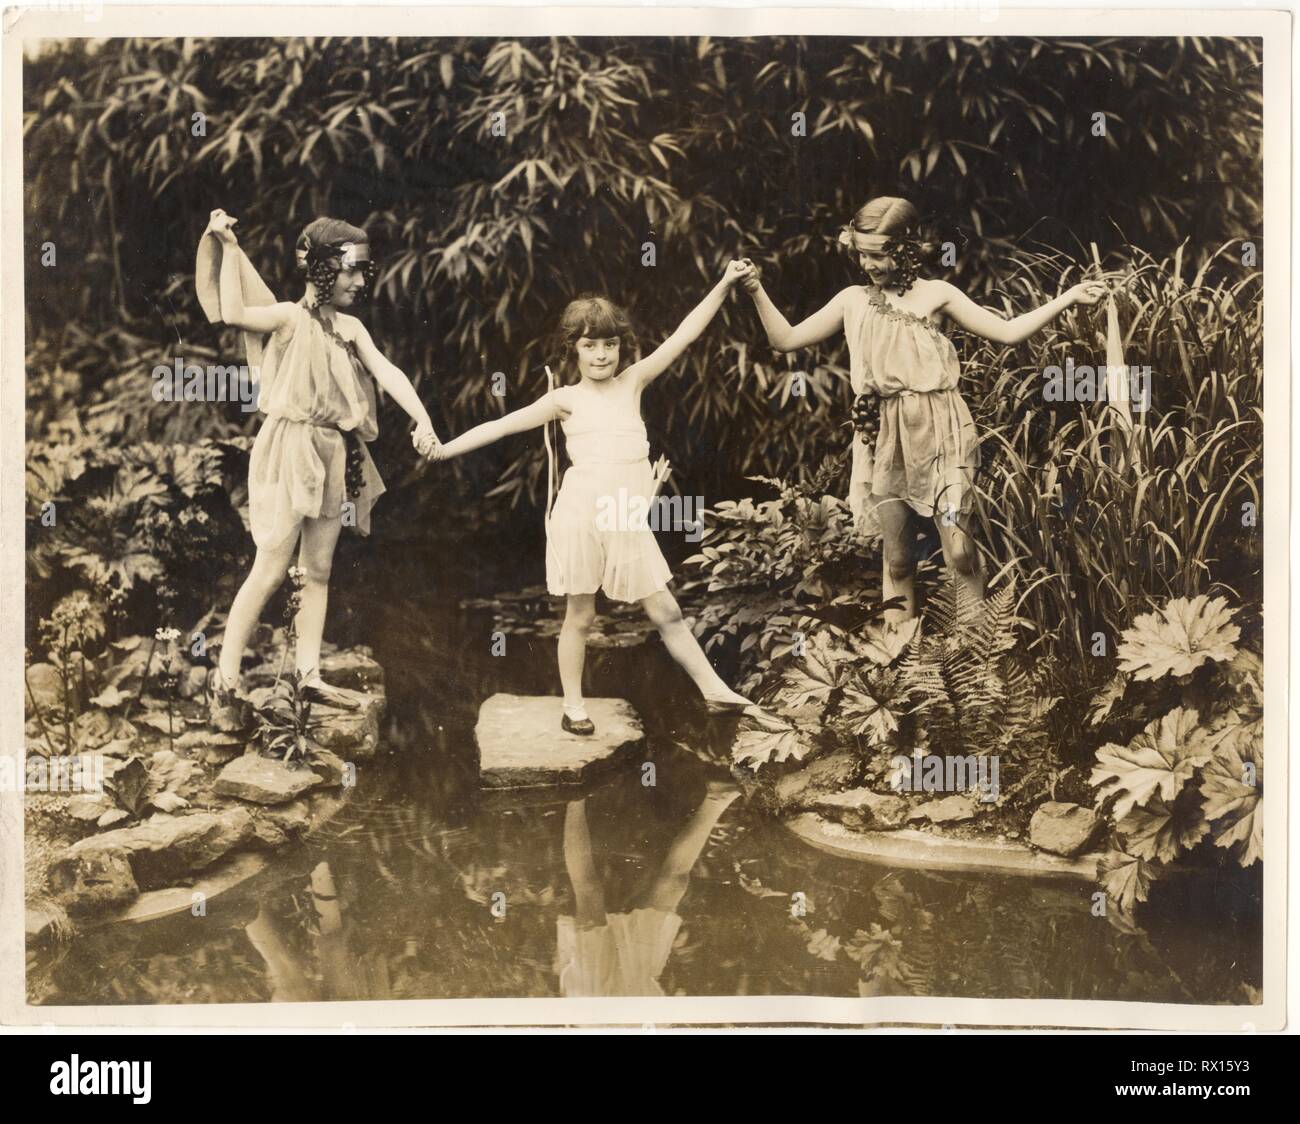 1920 Photo de Dame Acland's Daughters, Betty (LH), Molly (RH) et un autre enfant, par Billie Bristow, chorégraphie de Dorice Stainer, Leslie Howard, la soeur de l'extérieur dans le jardin, Londres, R.-U. vers 1928 Banque D'Images